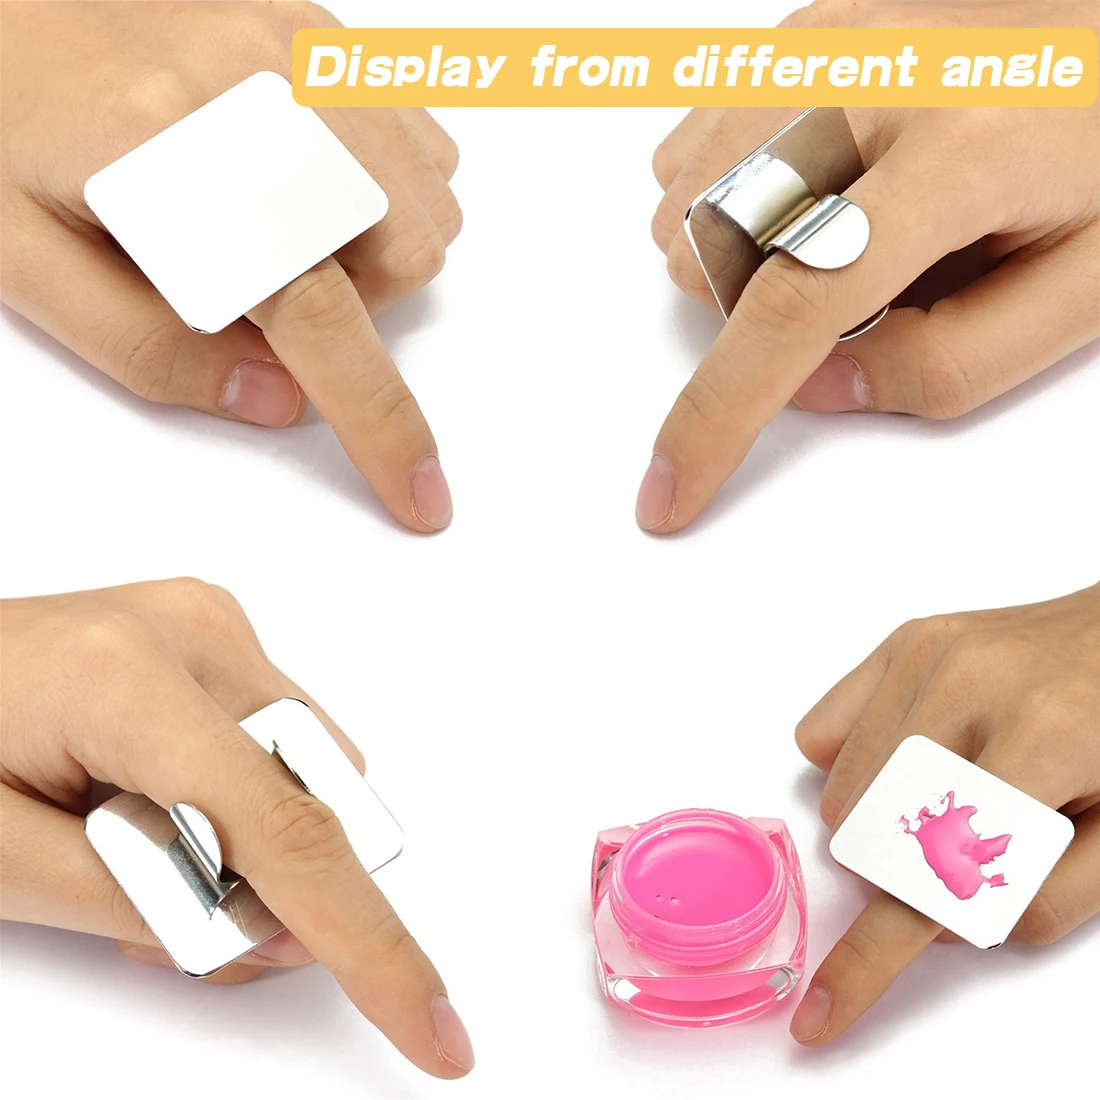 Салонный маникюр палец кольцо палитра цвета крем для макияжа основа, смешивание палитра косметический макияж инструмент нержавеющая сталь пластины